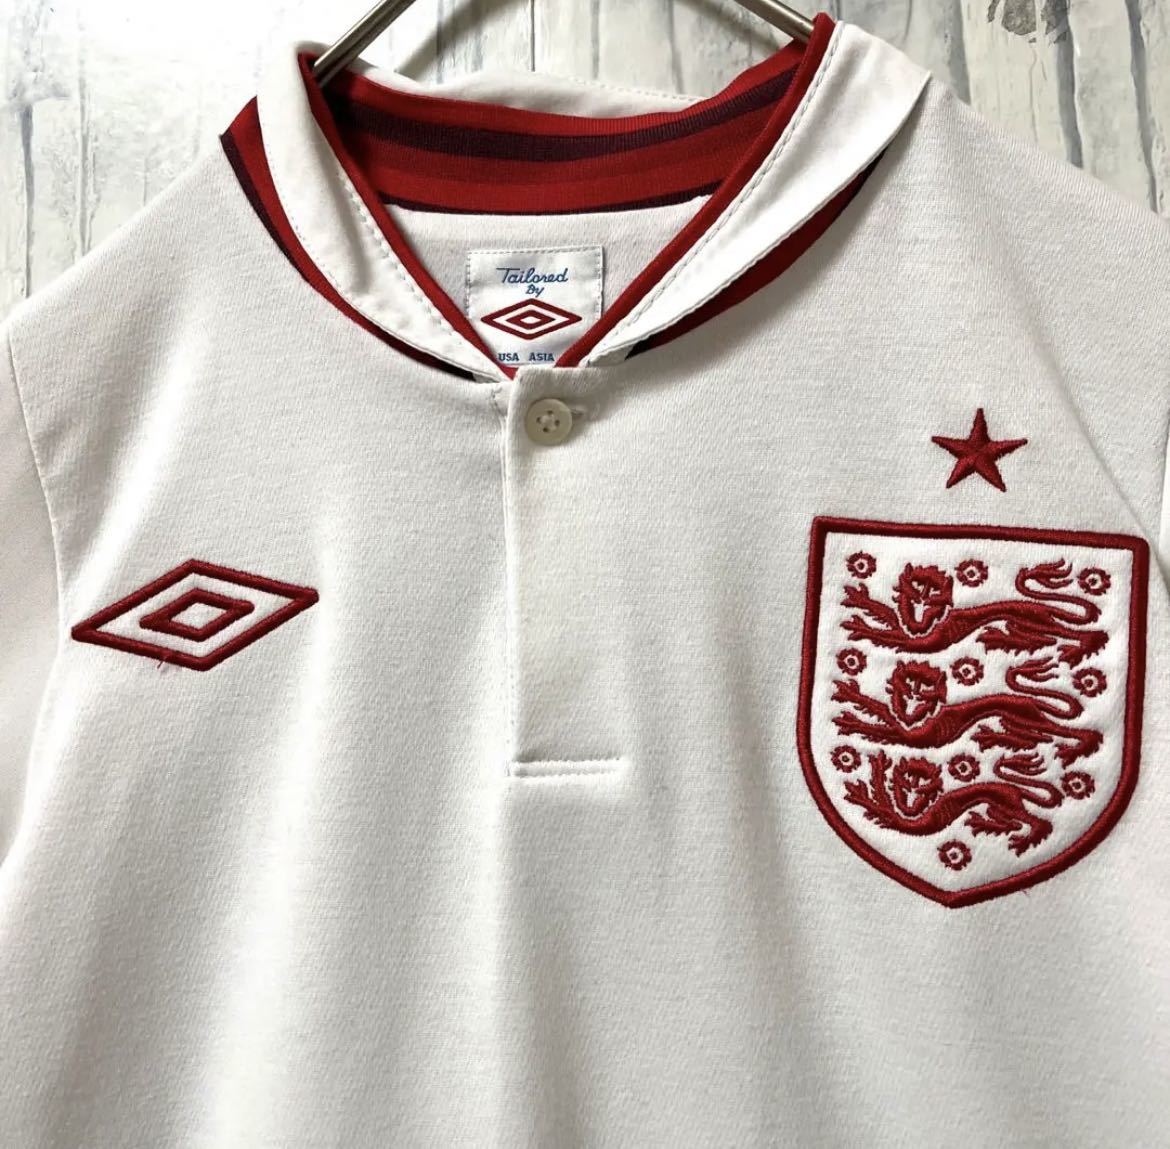 UMBRO アンブロ サッカー イングランド代表 ユニフォーム ゲームシャツ 半袖 刺繍ロゴ ワッペン サイズL 送料無料